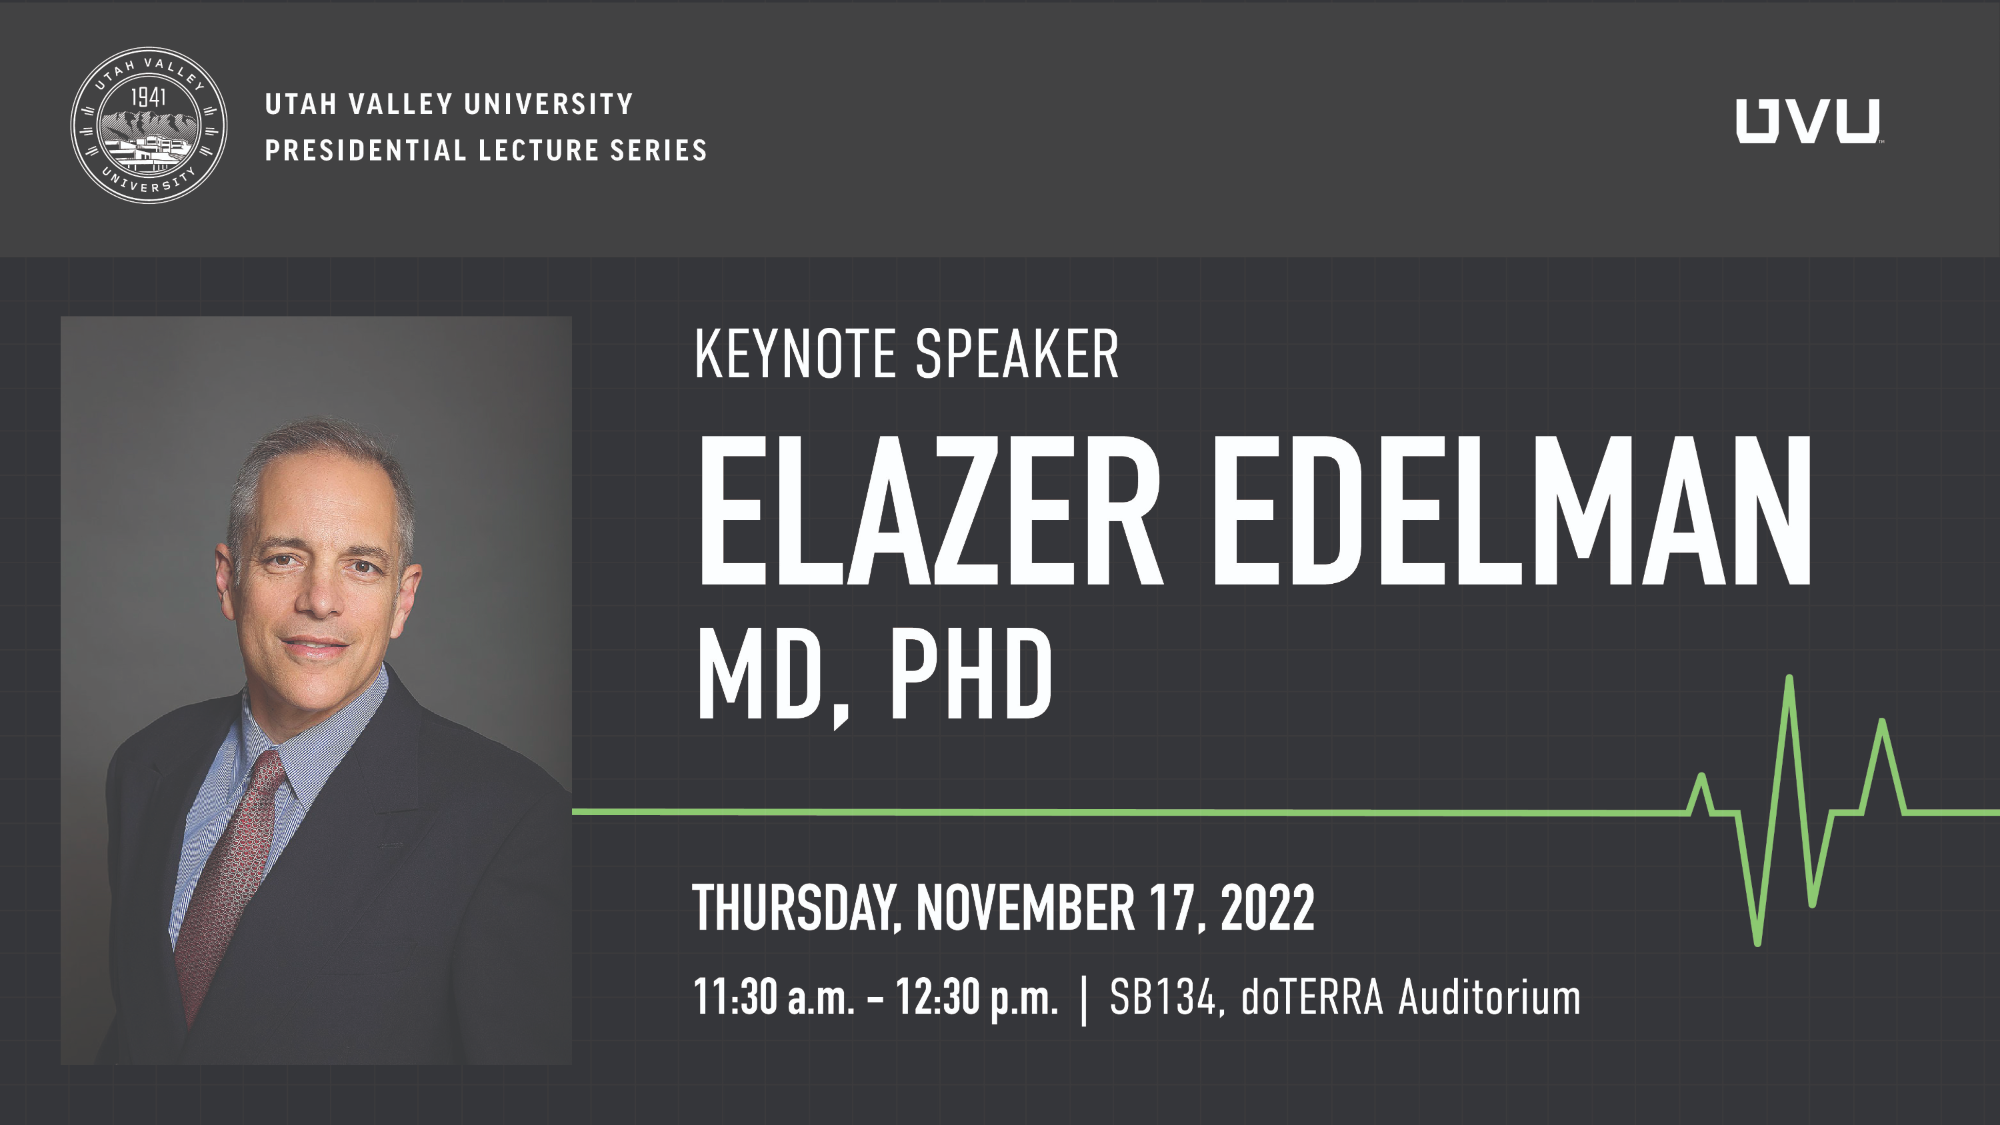 Elazer Edelman, MD, PHD. Thursday, November 17 , 2022 @ 11:30am - 12:30pm in SB134, doTERRA Auditroium. Utah Valley University Presidential Lecture Series.